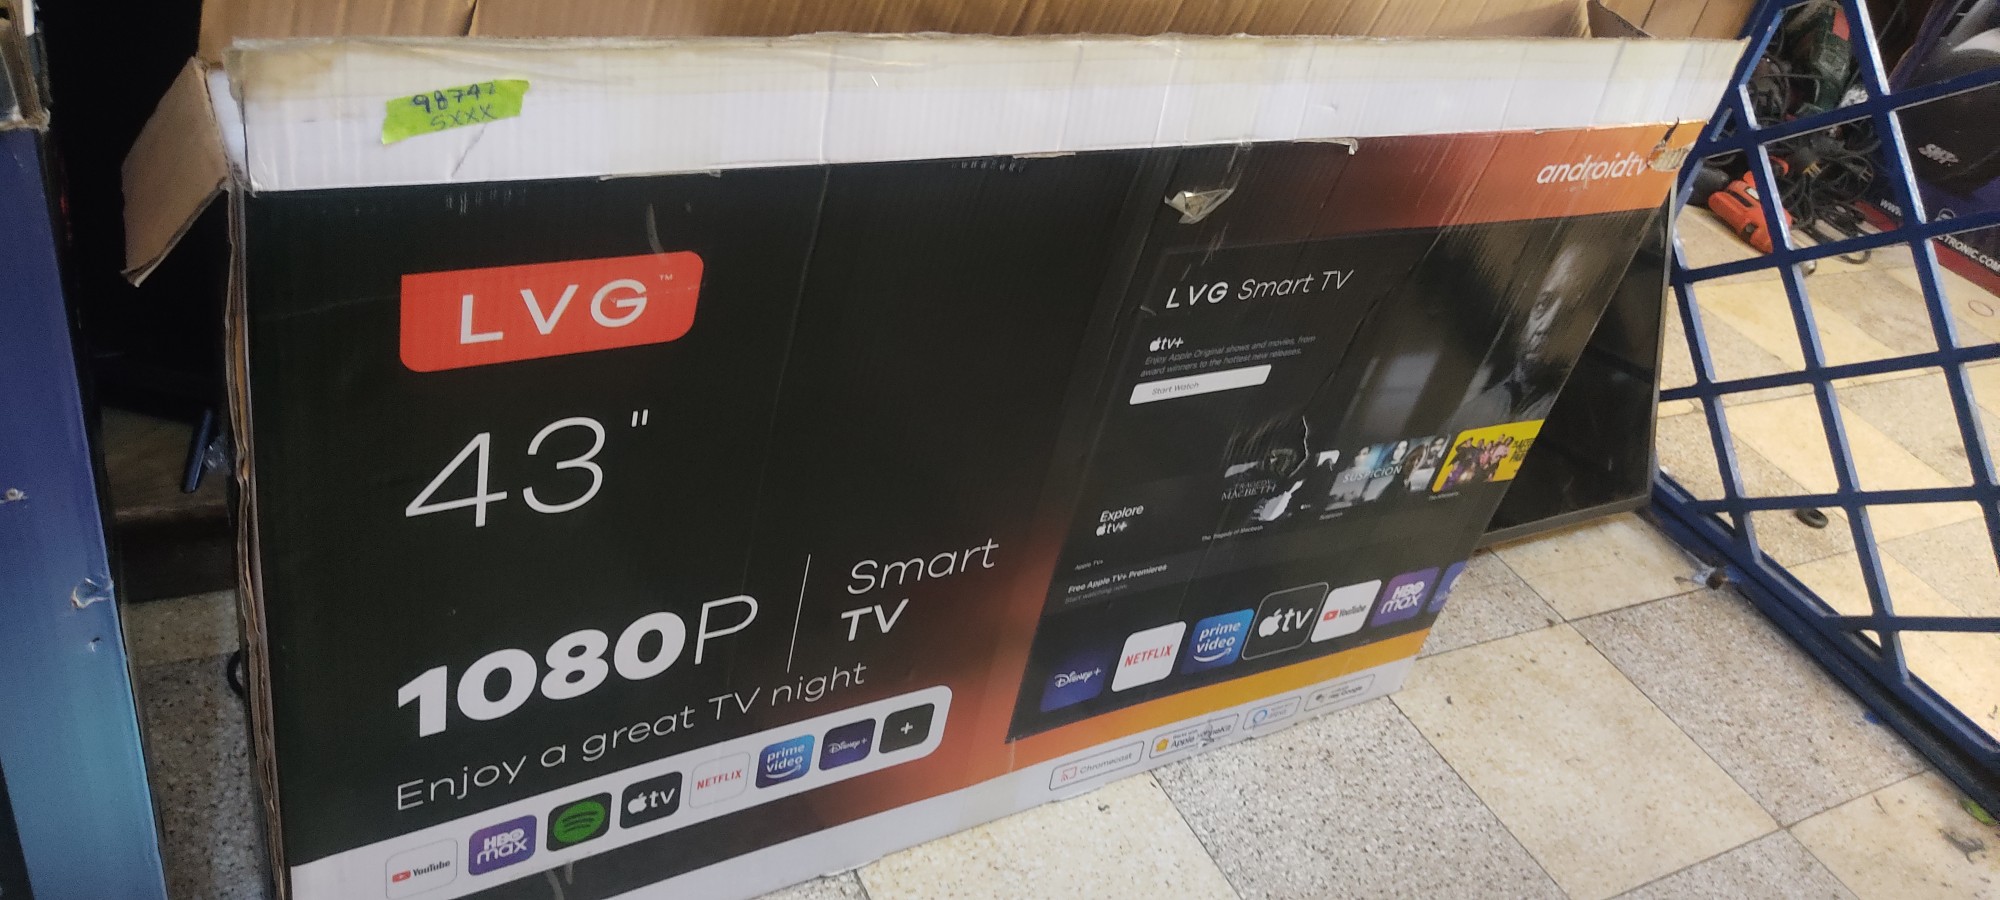 tv - Tv smartv 43pulgadas lvg en caja 1080p 1